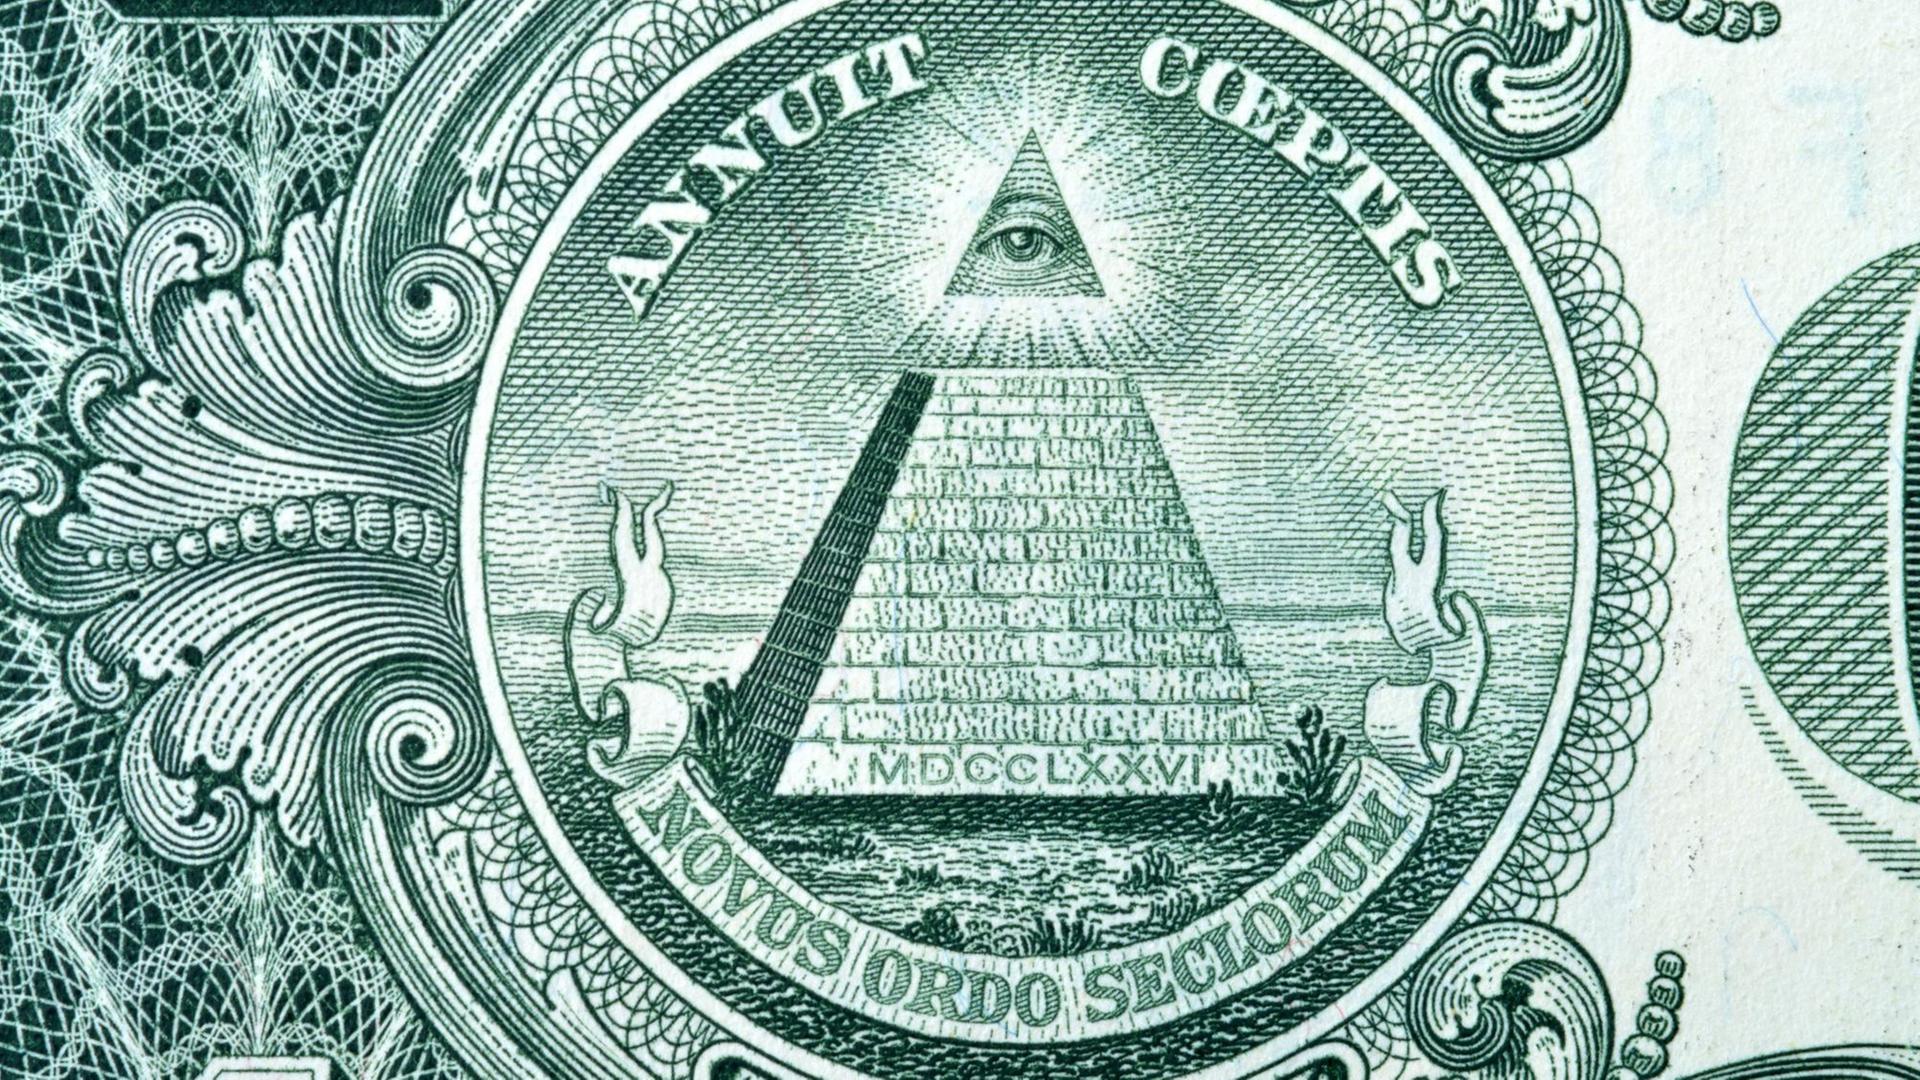 Das "Auge der Vorsehung" auf der amerikanischen Ein-Dollar-Note, das Verschwörungstheoretiker mit Geheimgesellschaften wie den Illuminaten in Verbindung bringen